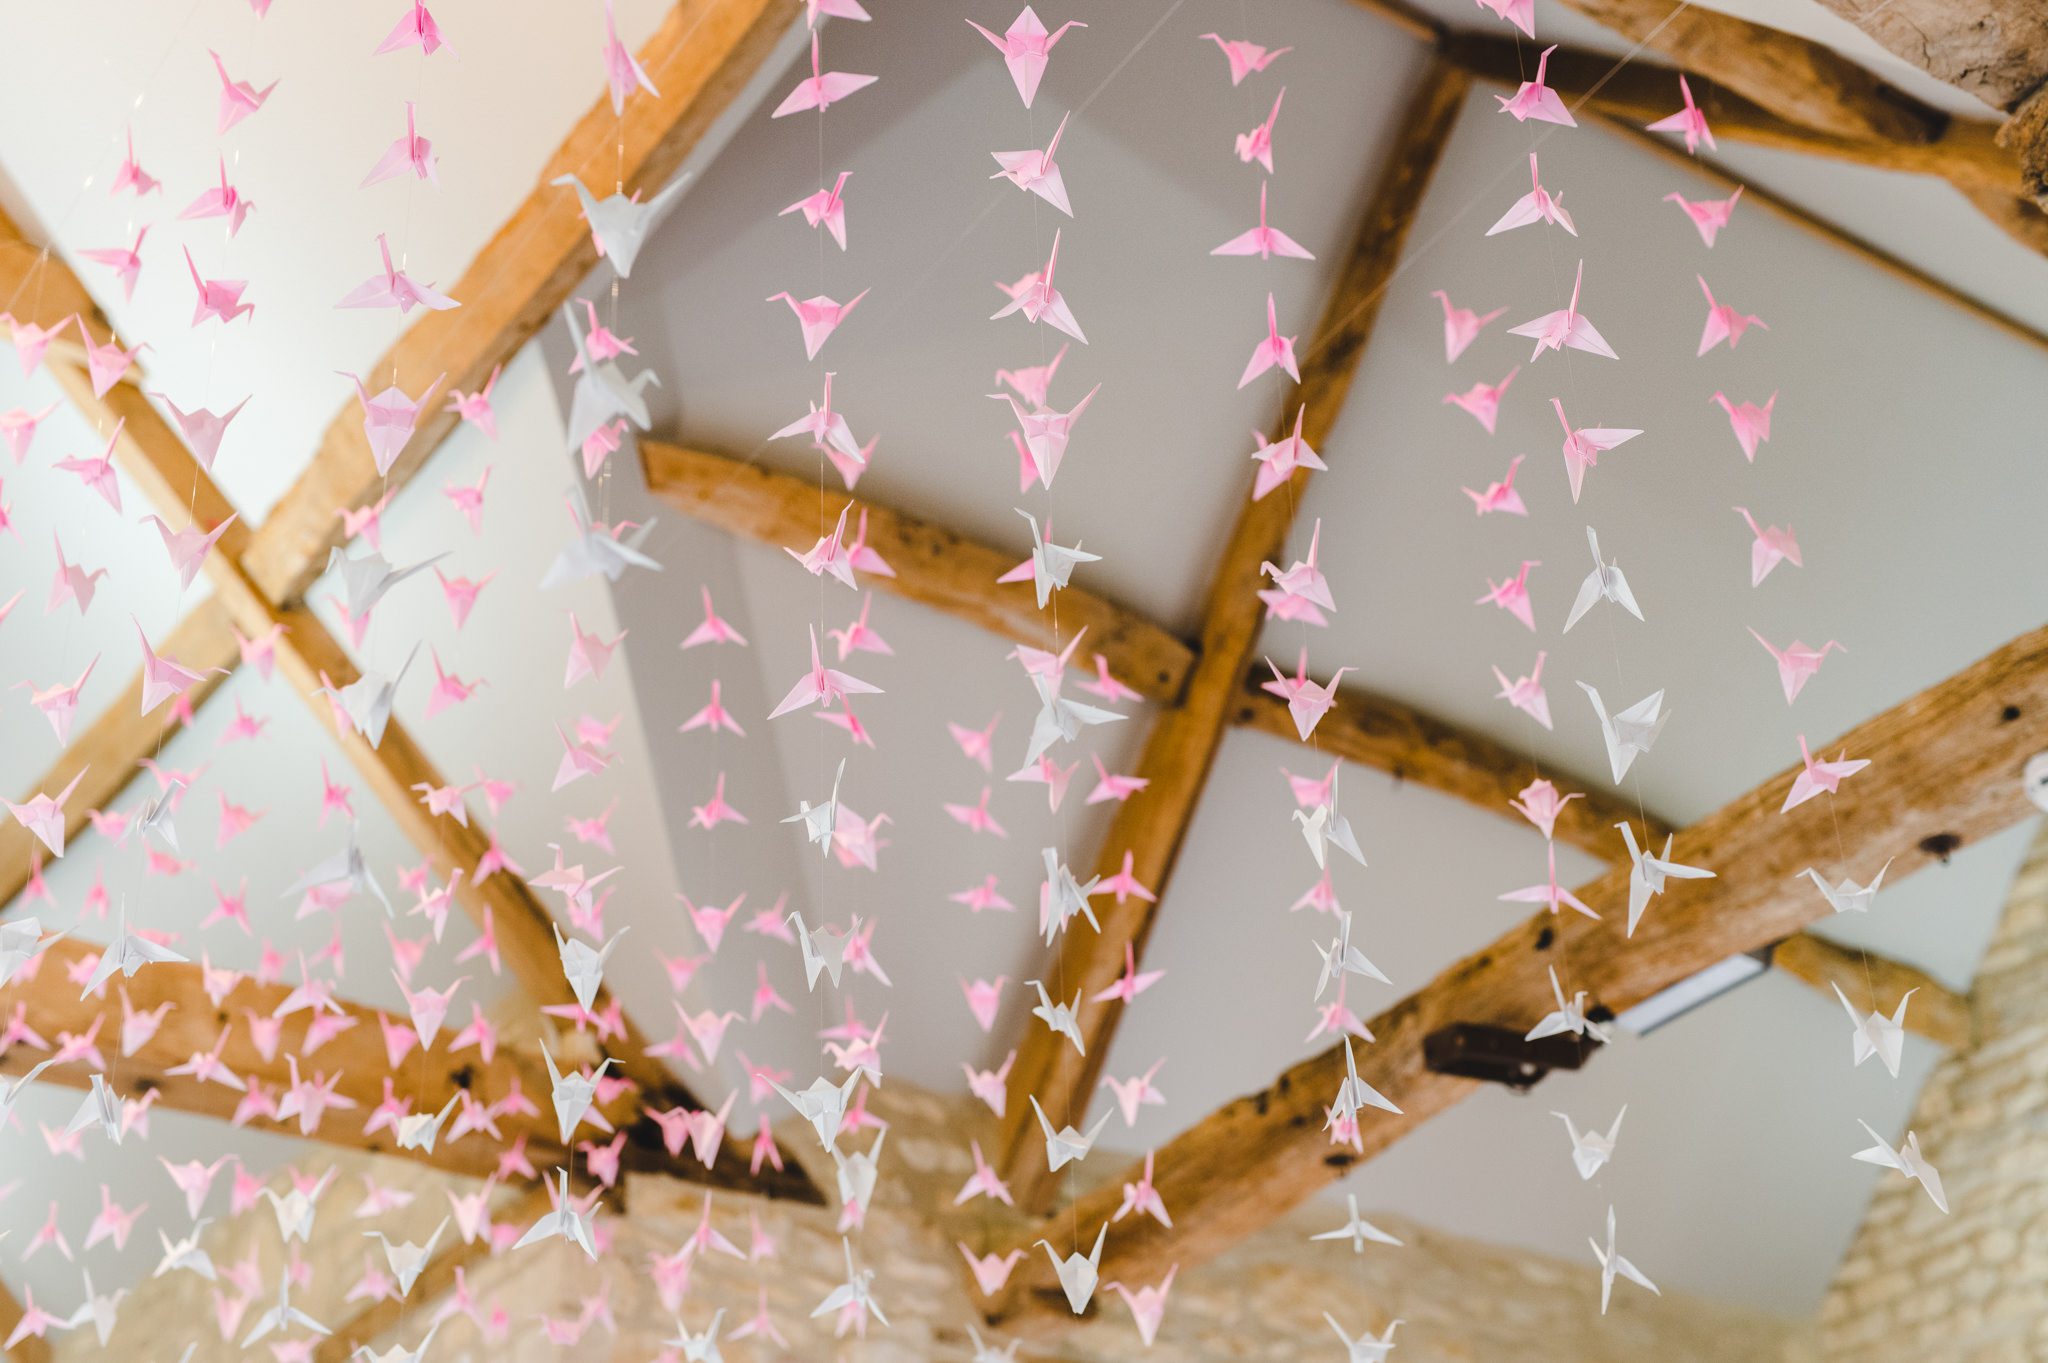 Paper cranes at a wedding